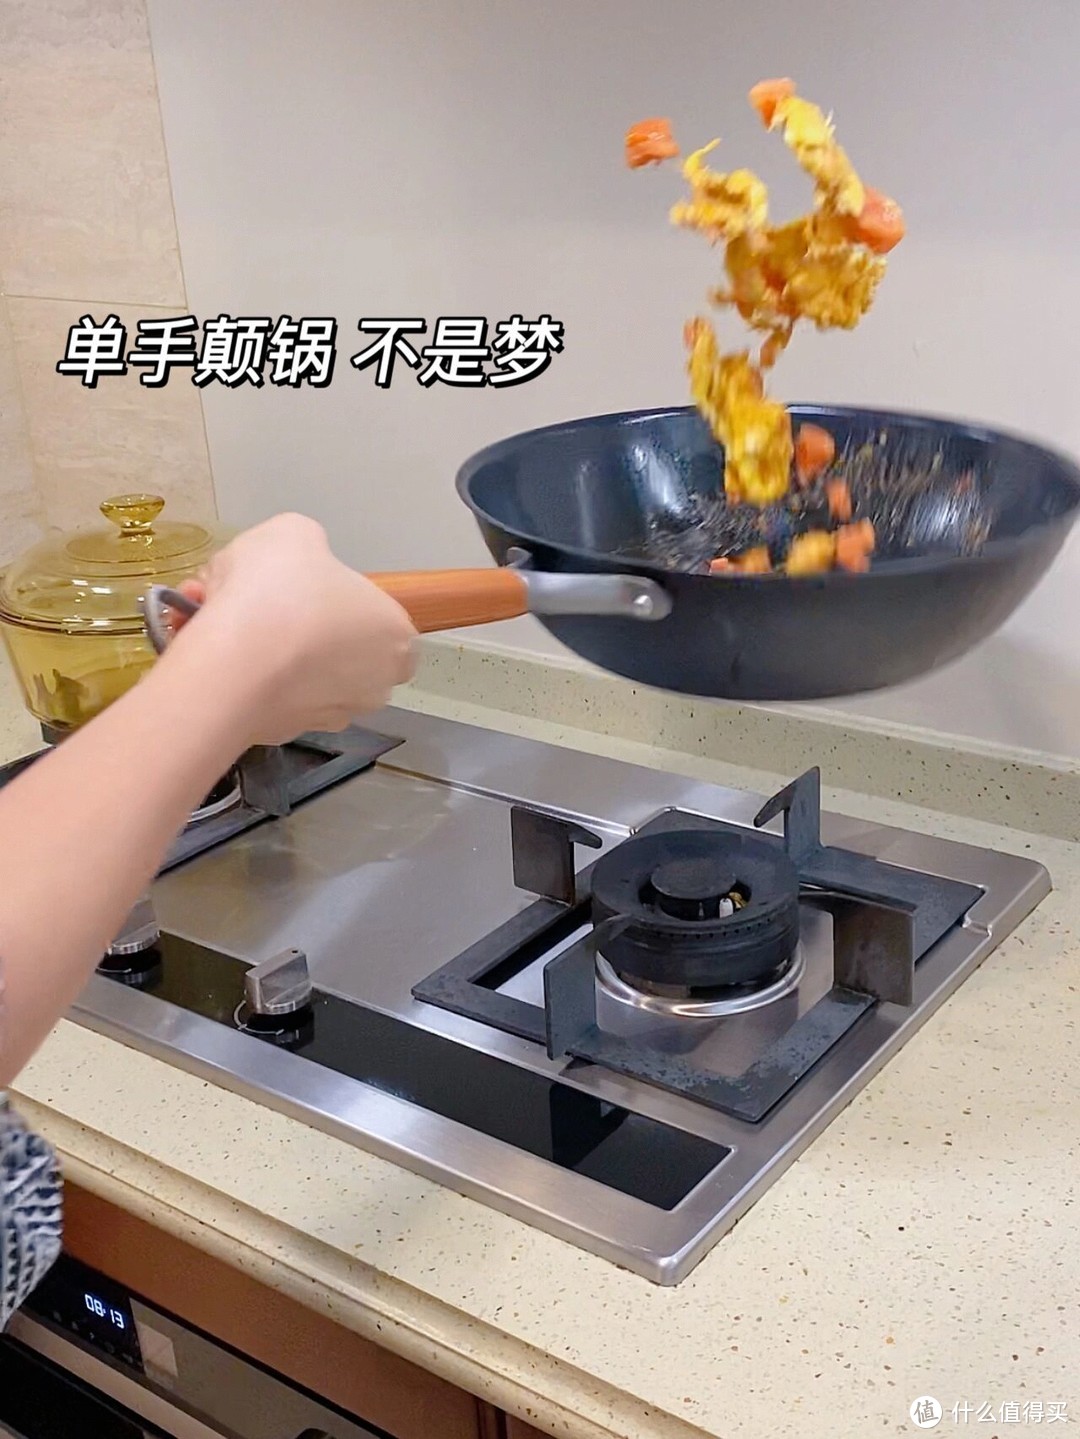 炒菜用的锅，到底应该选铁锅，还是不粘锅？